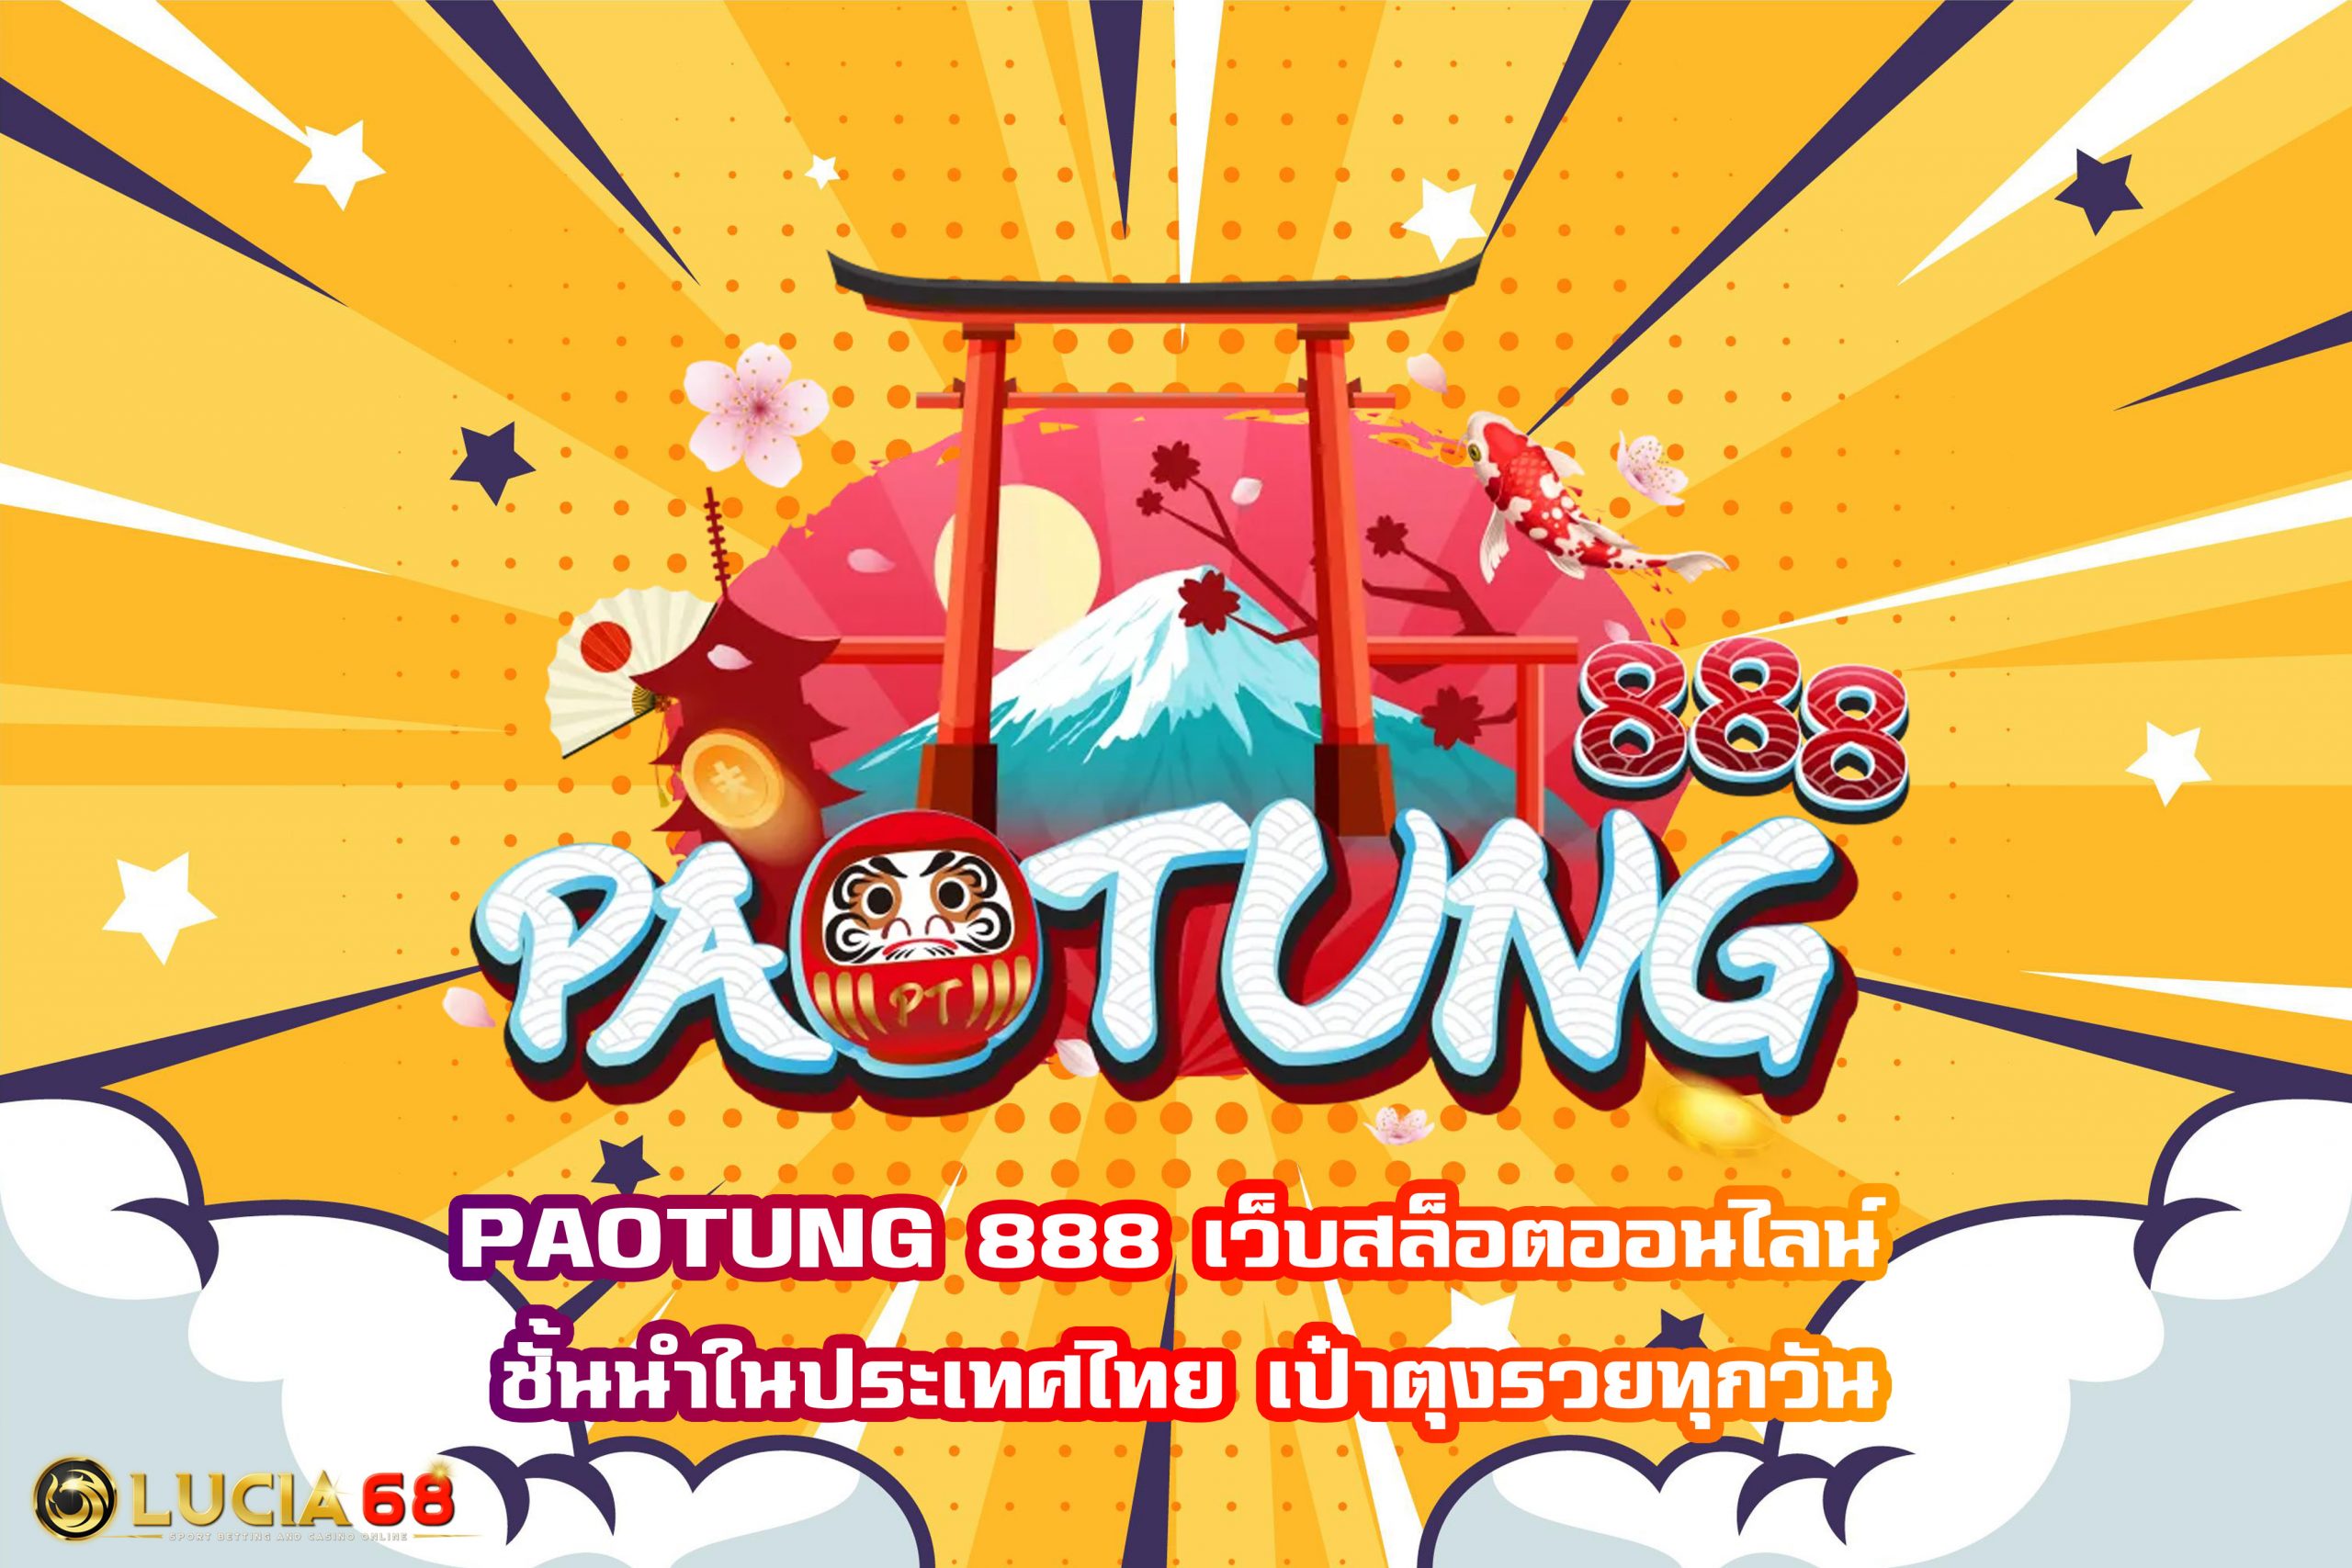 PAOTUNG 888 เว็บสล็อตออนไลน์ ชั้นนำในประเทศไทย เป๋าตุงรวยทุกวัน